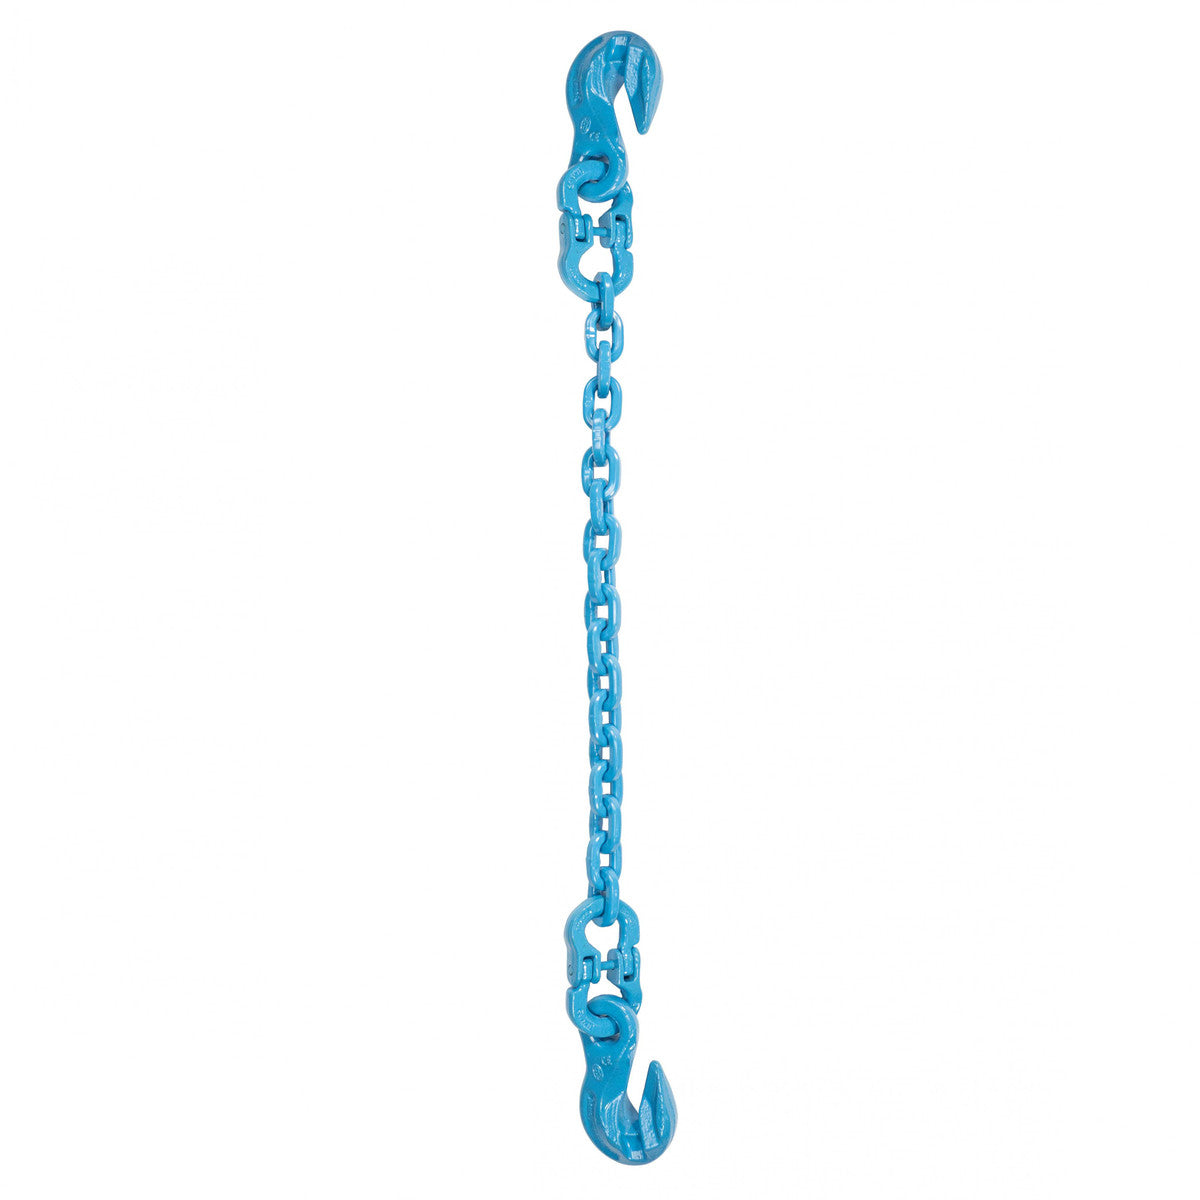 9/32" x 5' - Pewag Single Leg Chain Sling w/ Grab & Grab Hooks - Grade 120